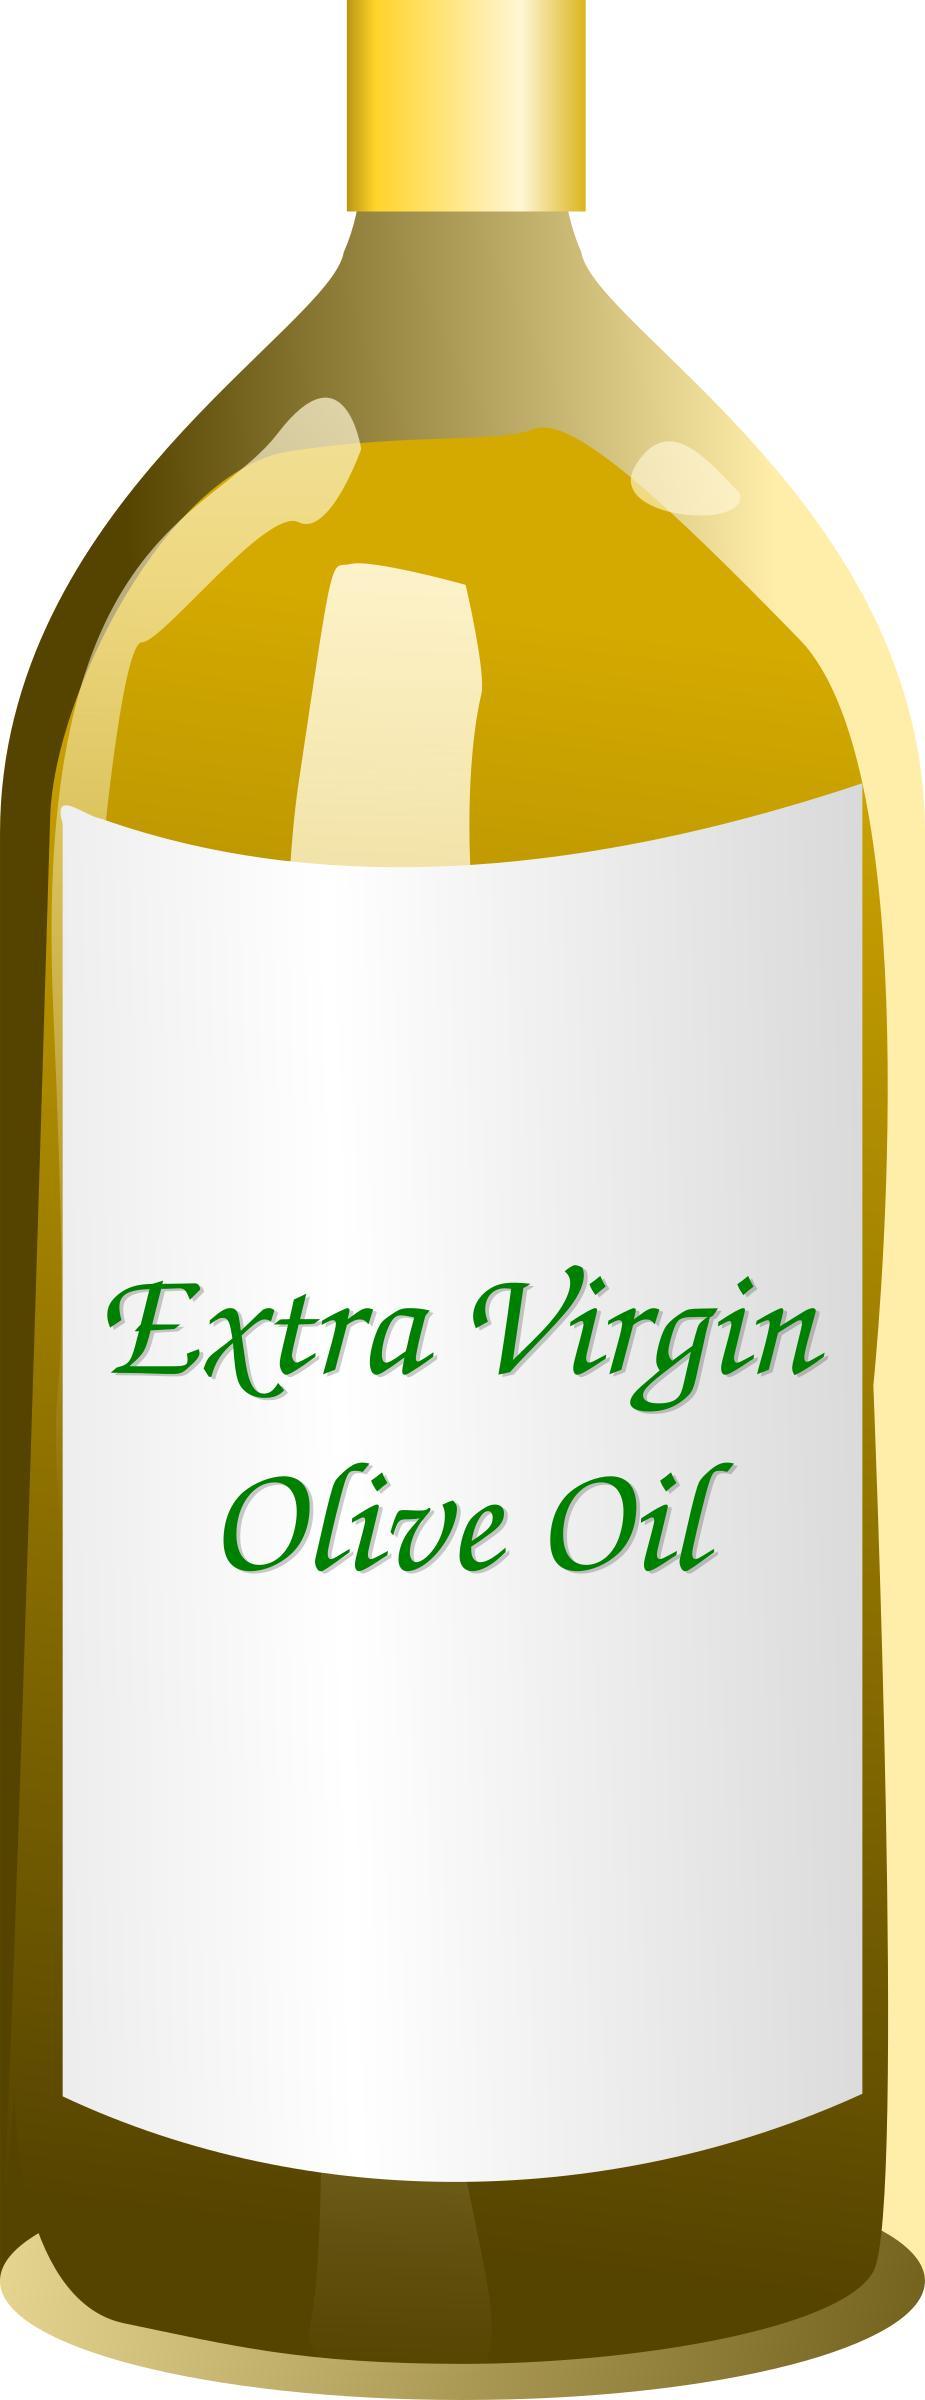 Extra Virgin Olive Oil bottle png transparent